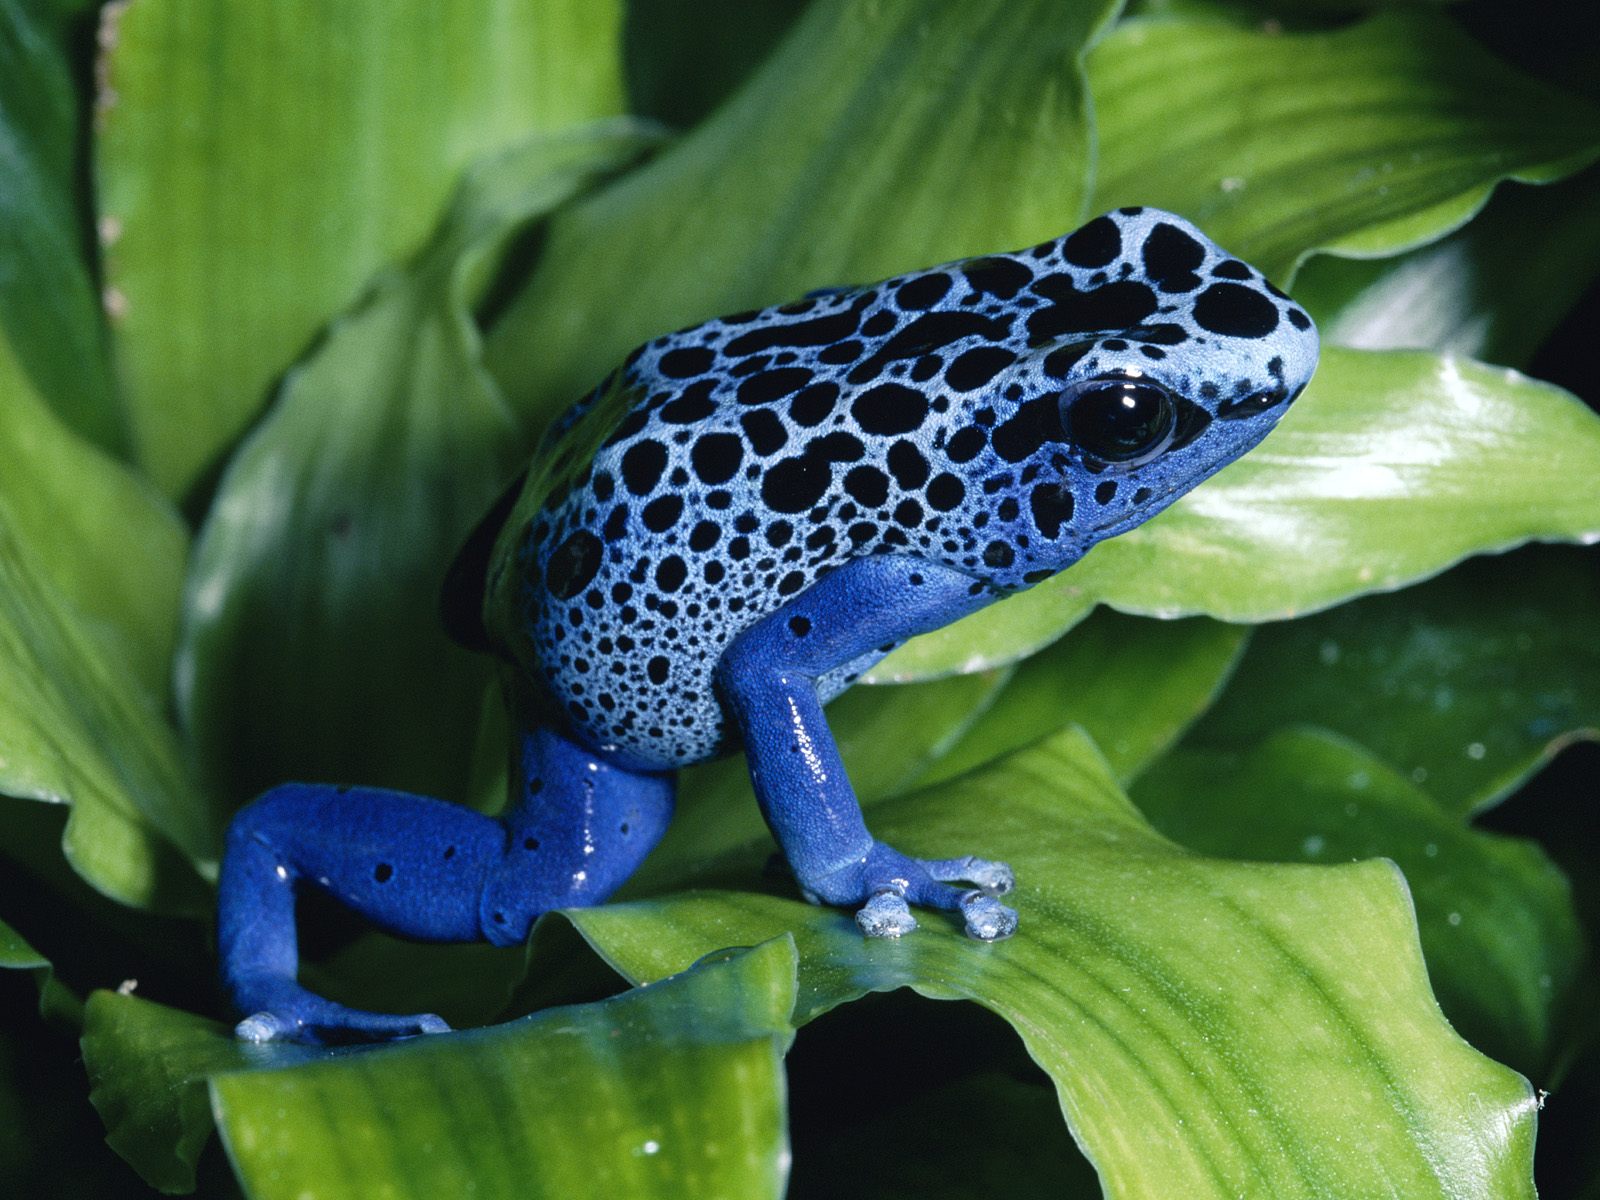 http://1.bp.blogspot.com/-HL3eM-X9UPU/T-xciFPIiYI/AAAAAAAAApY/GhWxClKZ1E4/s1600/Blue-Poison-Dart-Frog.jpg